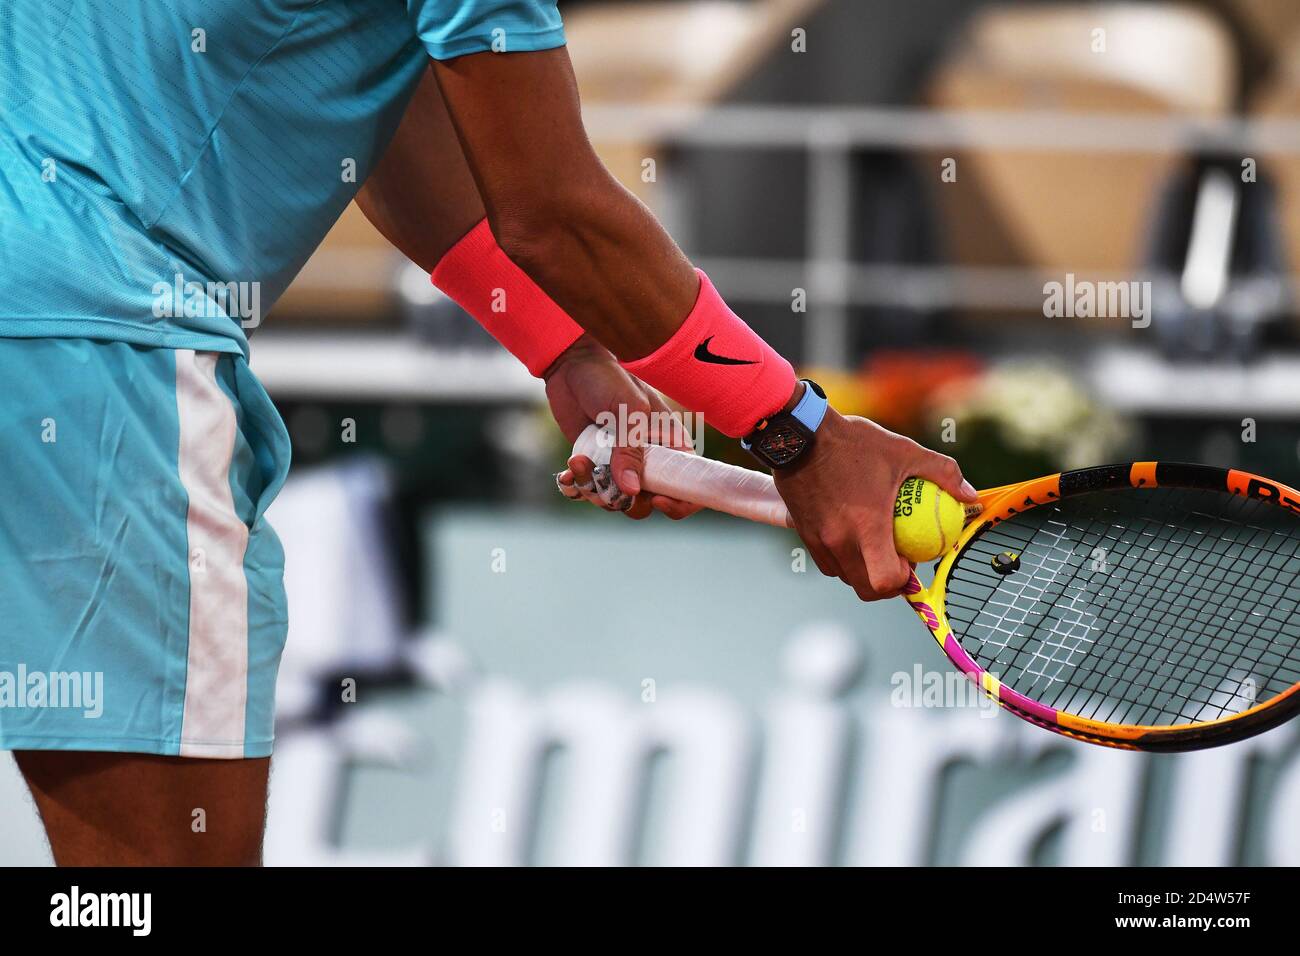 Paris, Frankreich. Oktober 2020. Roland Garros Paris Französisch Open 2020 Tag 15 111020 Rafael Nadal (ESP) in Herren Singles Finale Kredit: Roger Parker/Alamy Live News Stockfoto